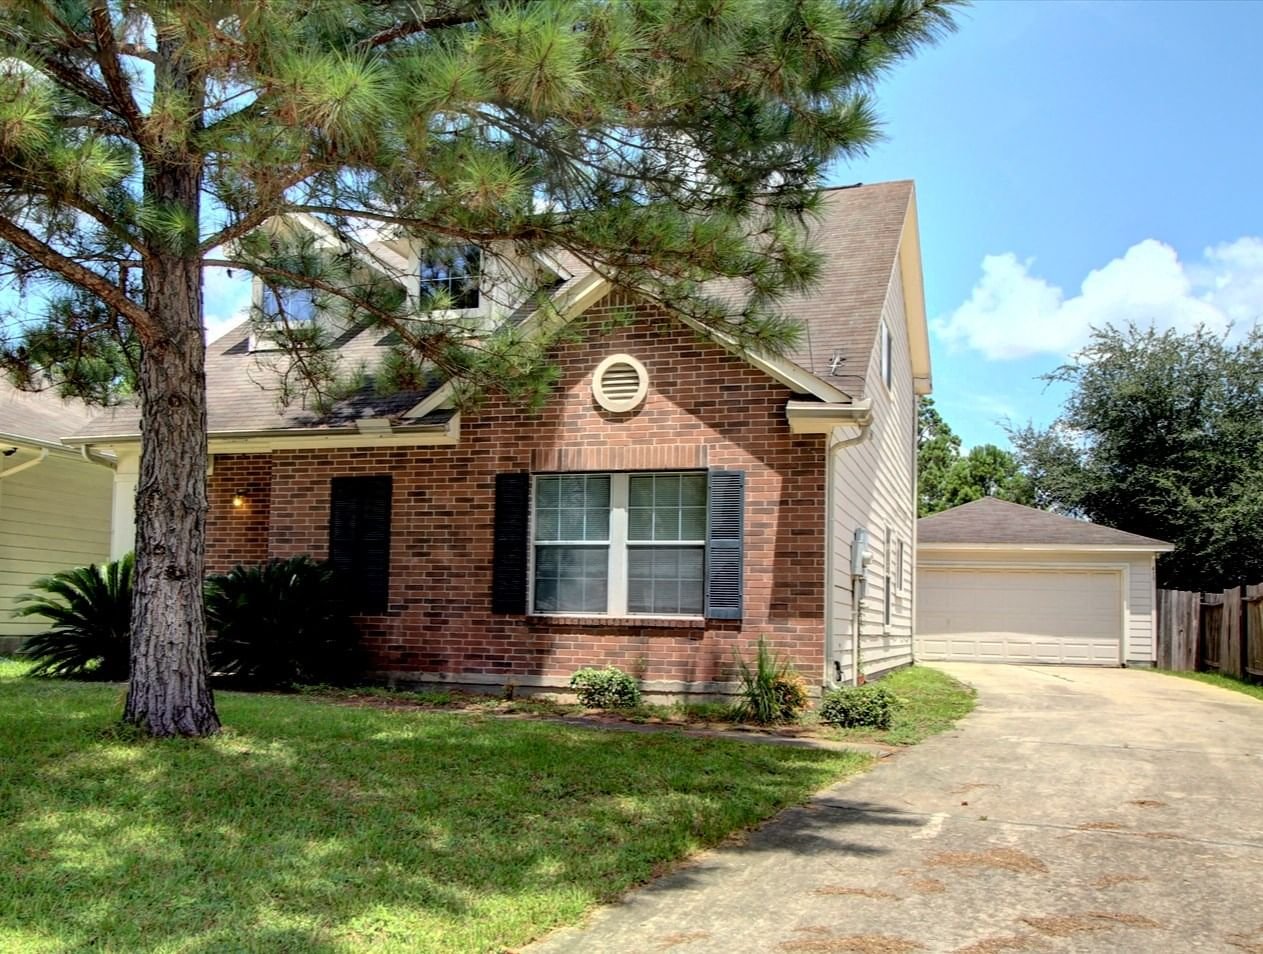 Real estate property located at 419 Laurel Timbers, Harris, Lakewood Cove Sec 02, Houston, TX, US